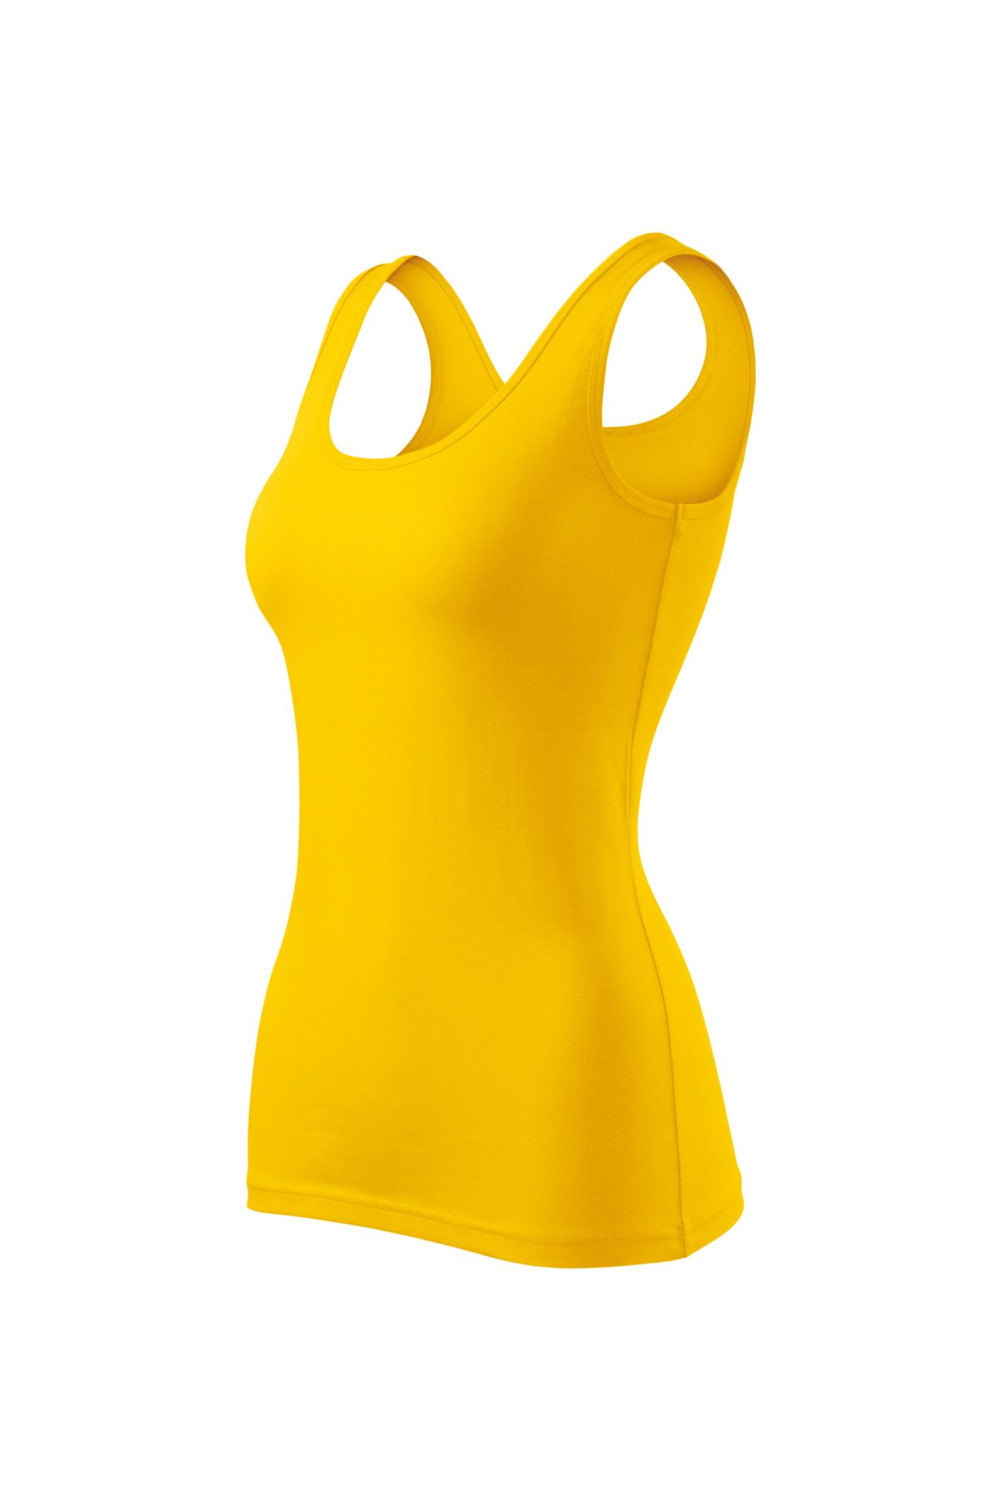 Top damski 95% bawełna 5% elastan koszulka TRIUMPH 136 koszulki / T-shirt żółty